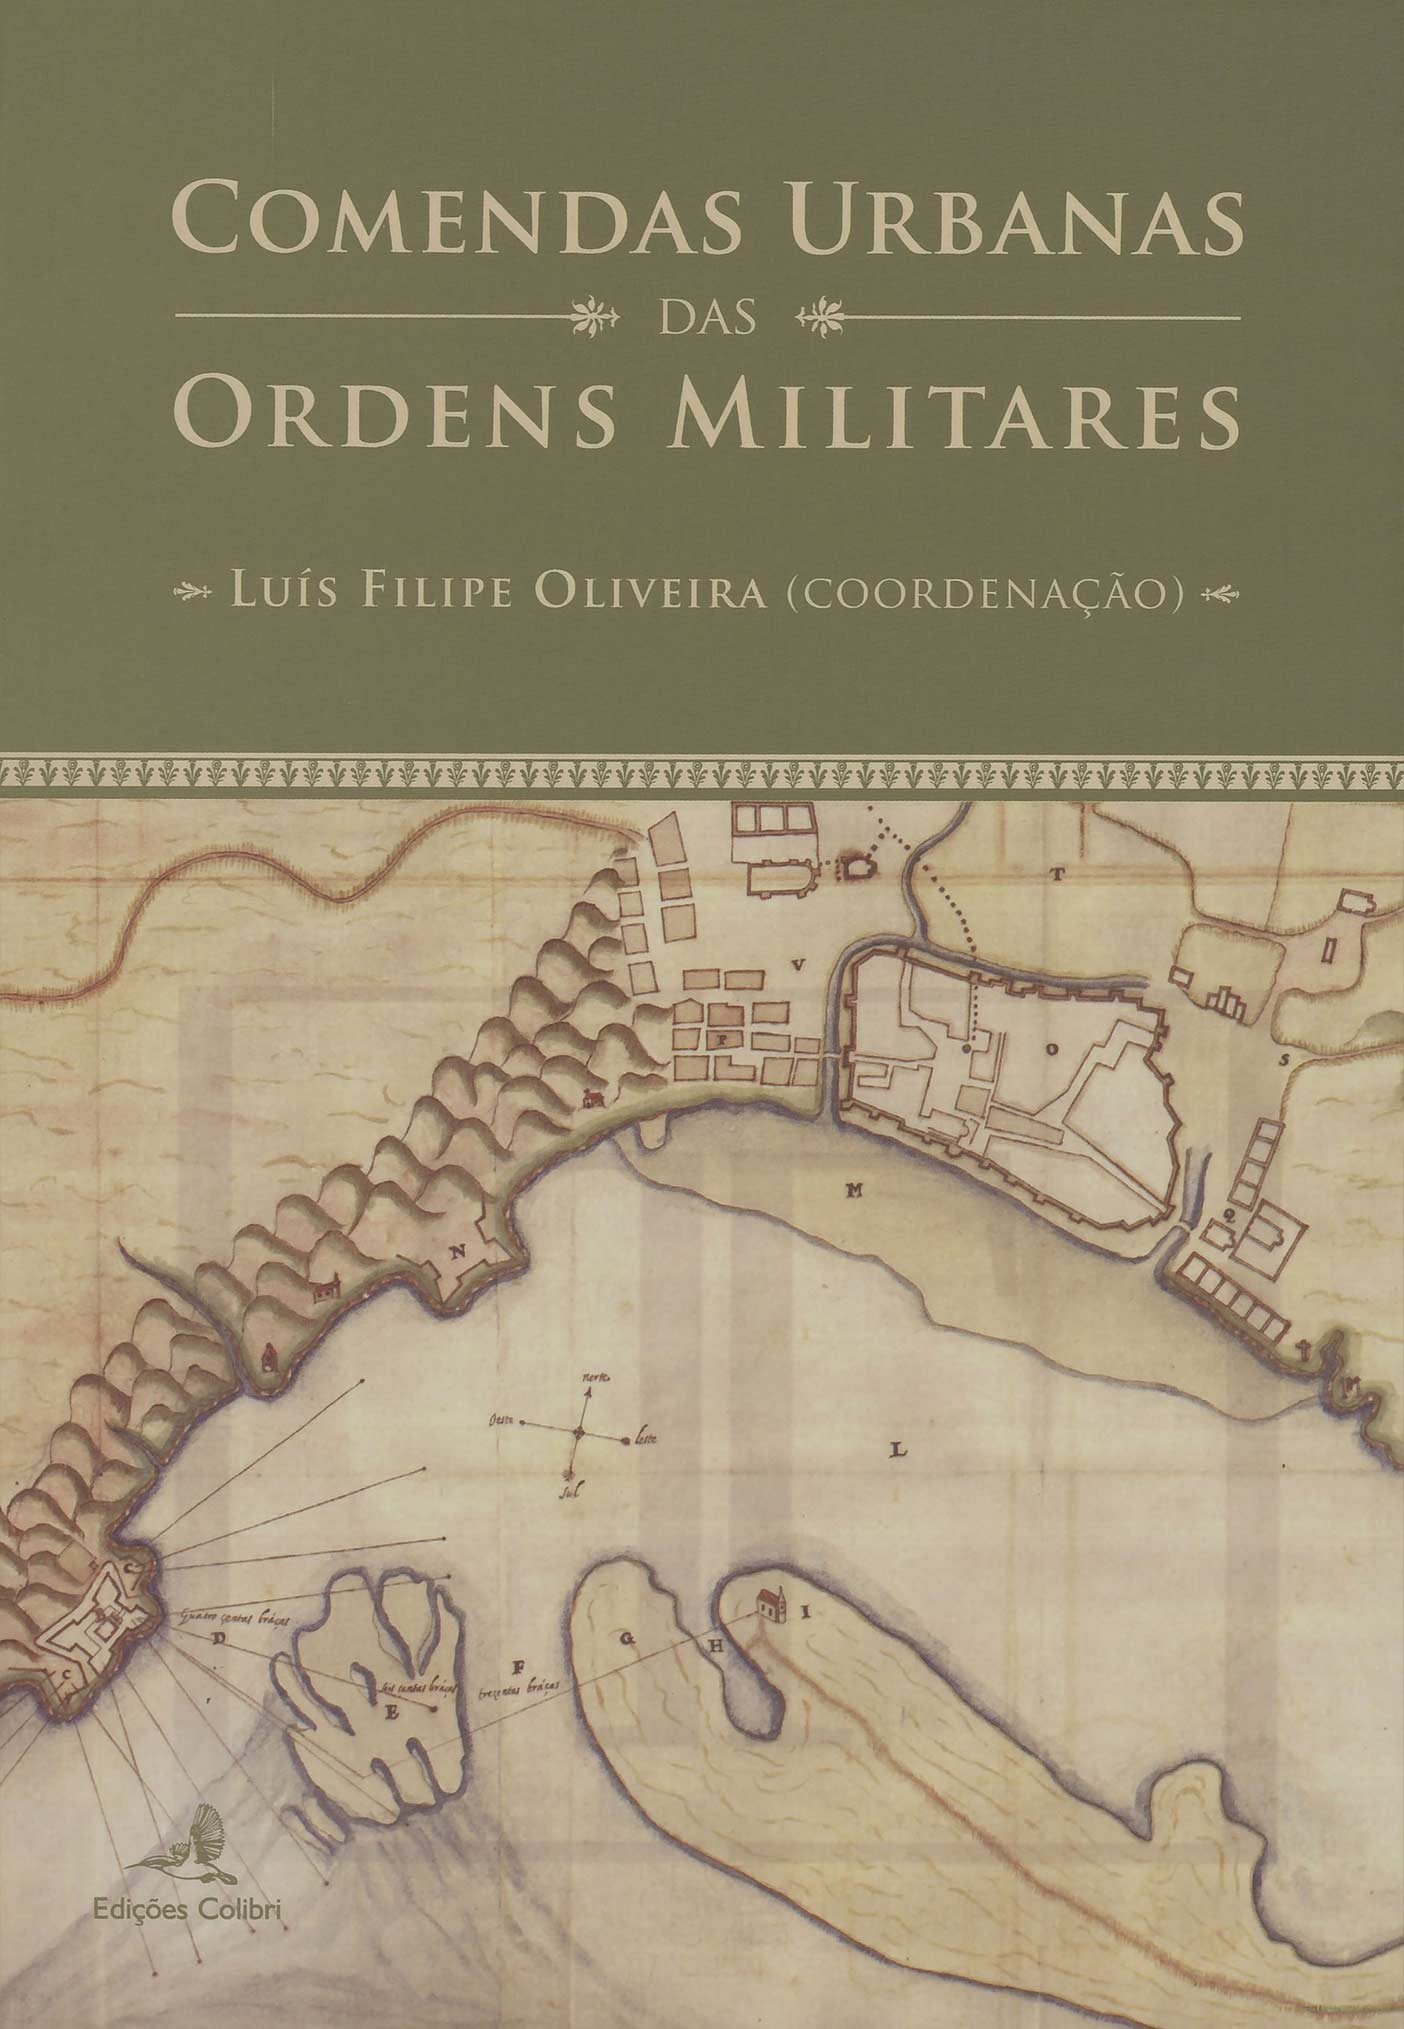 Capa da publicação Comendas urbanas das ordens militares